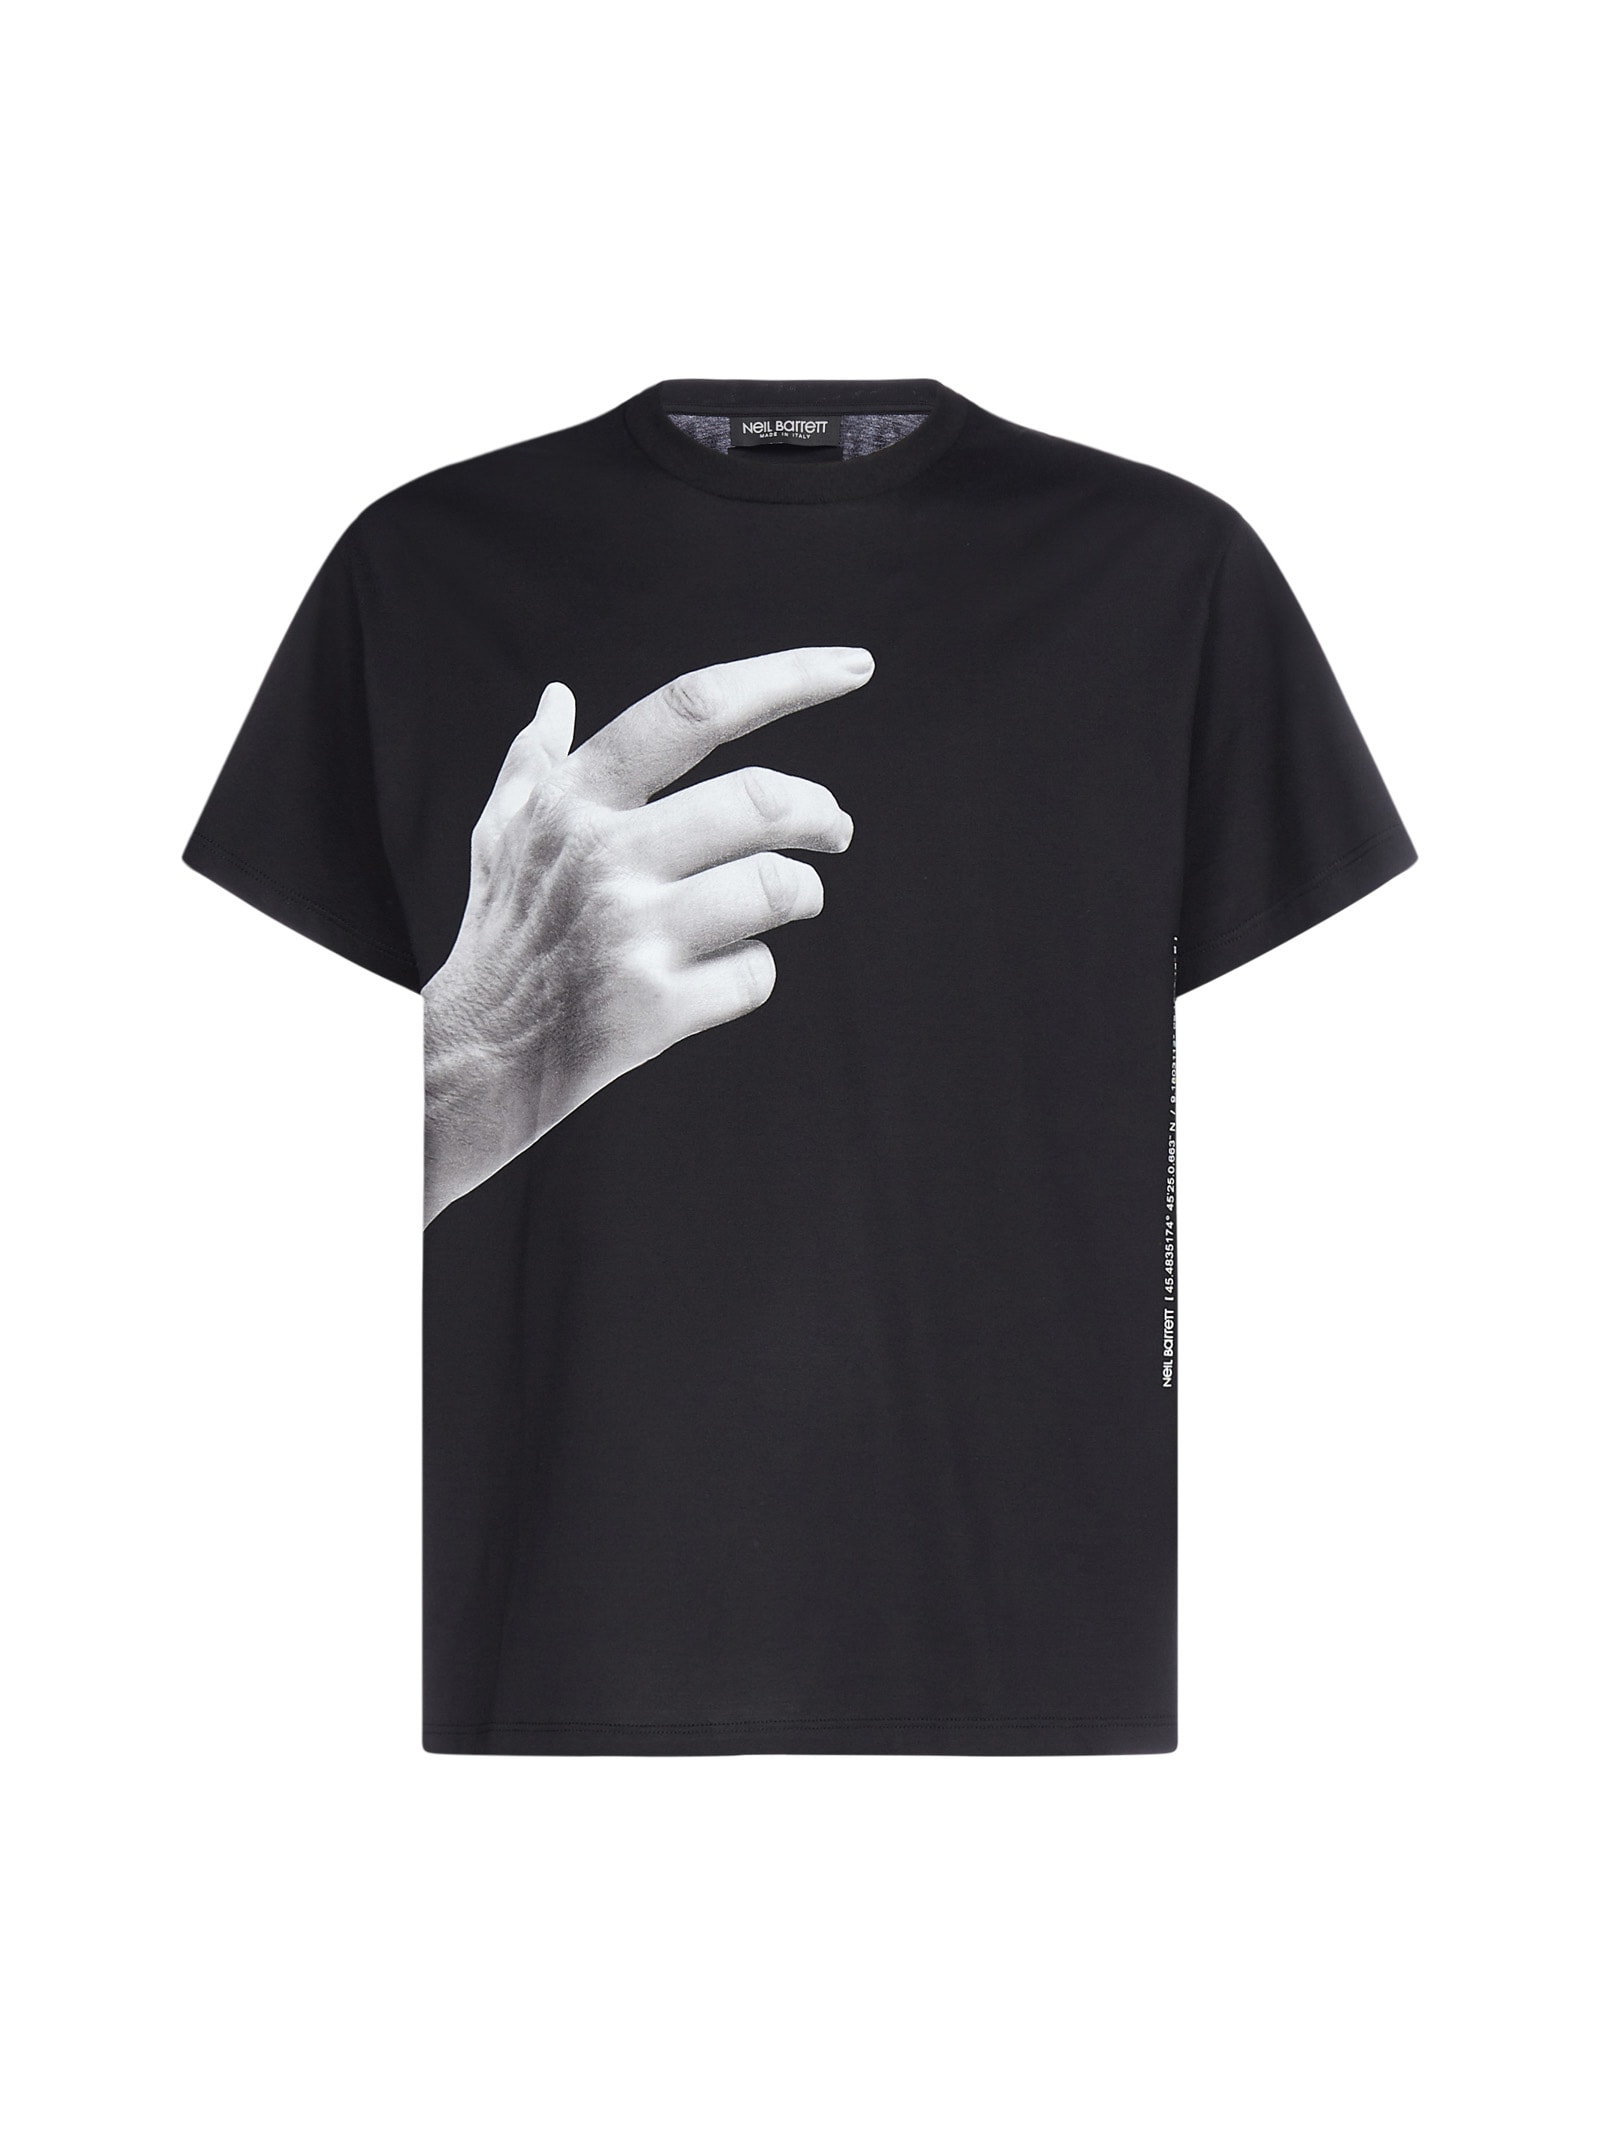 Neil Barrett The Other Hand Cotton T-shirt